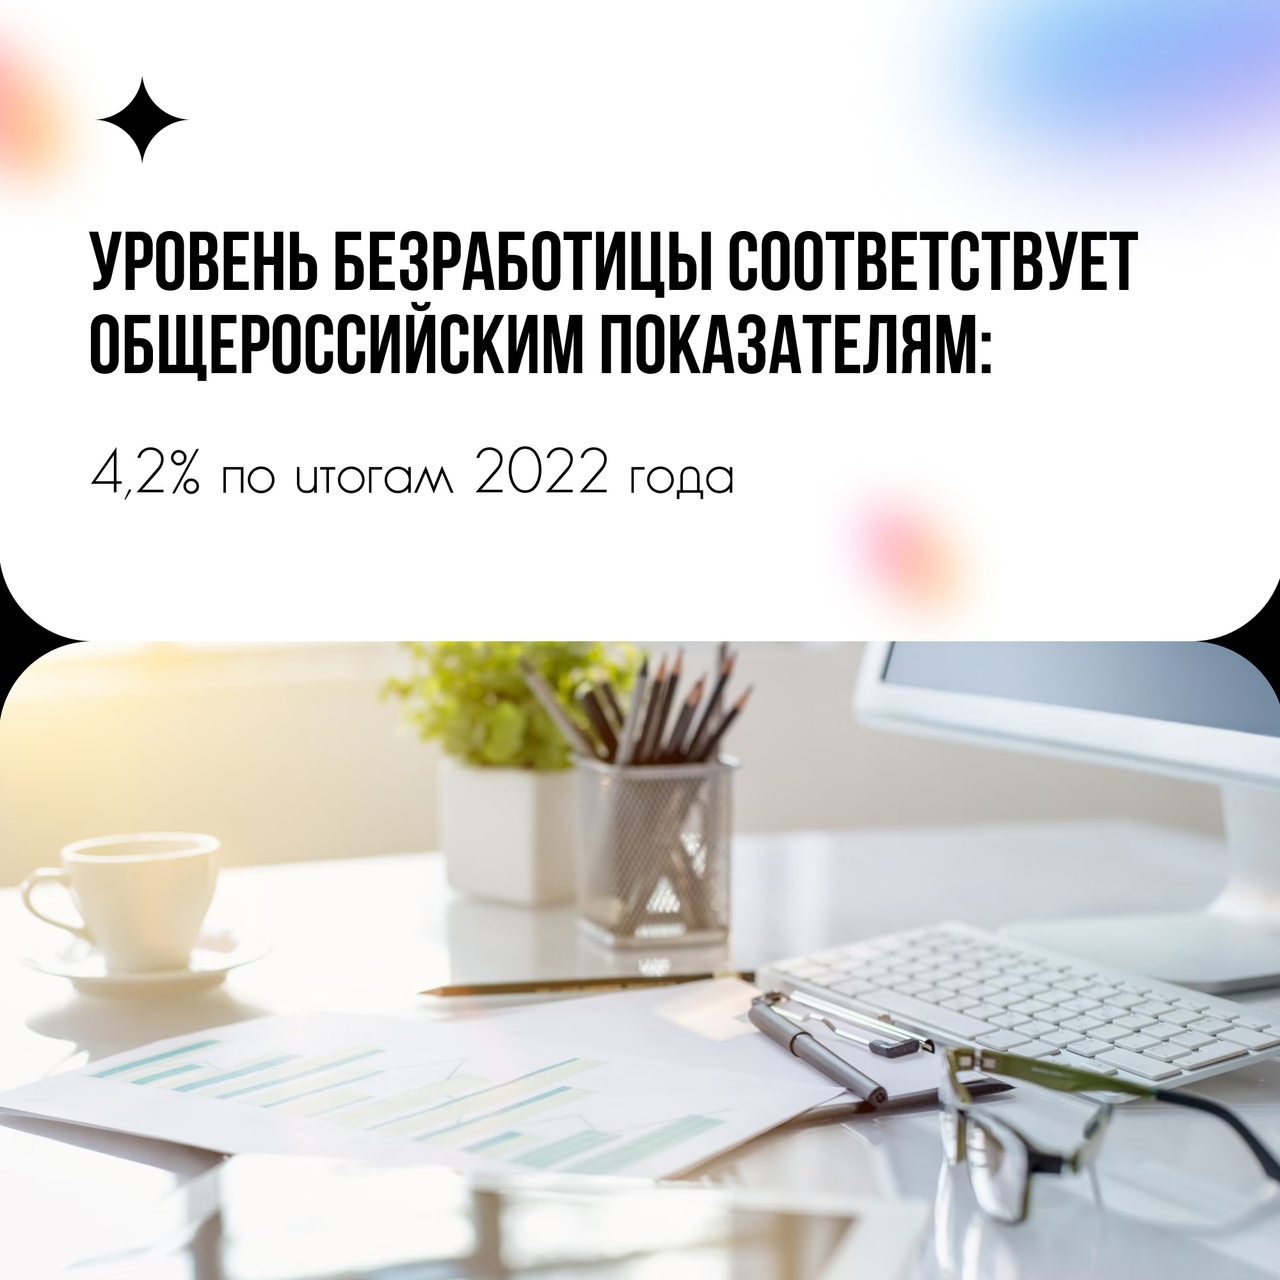 Как в Ульяновской области поддерживают работников предприятий?